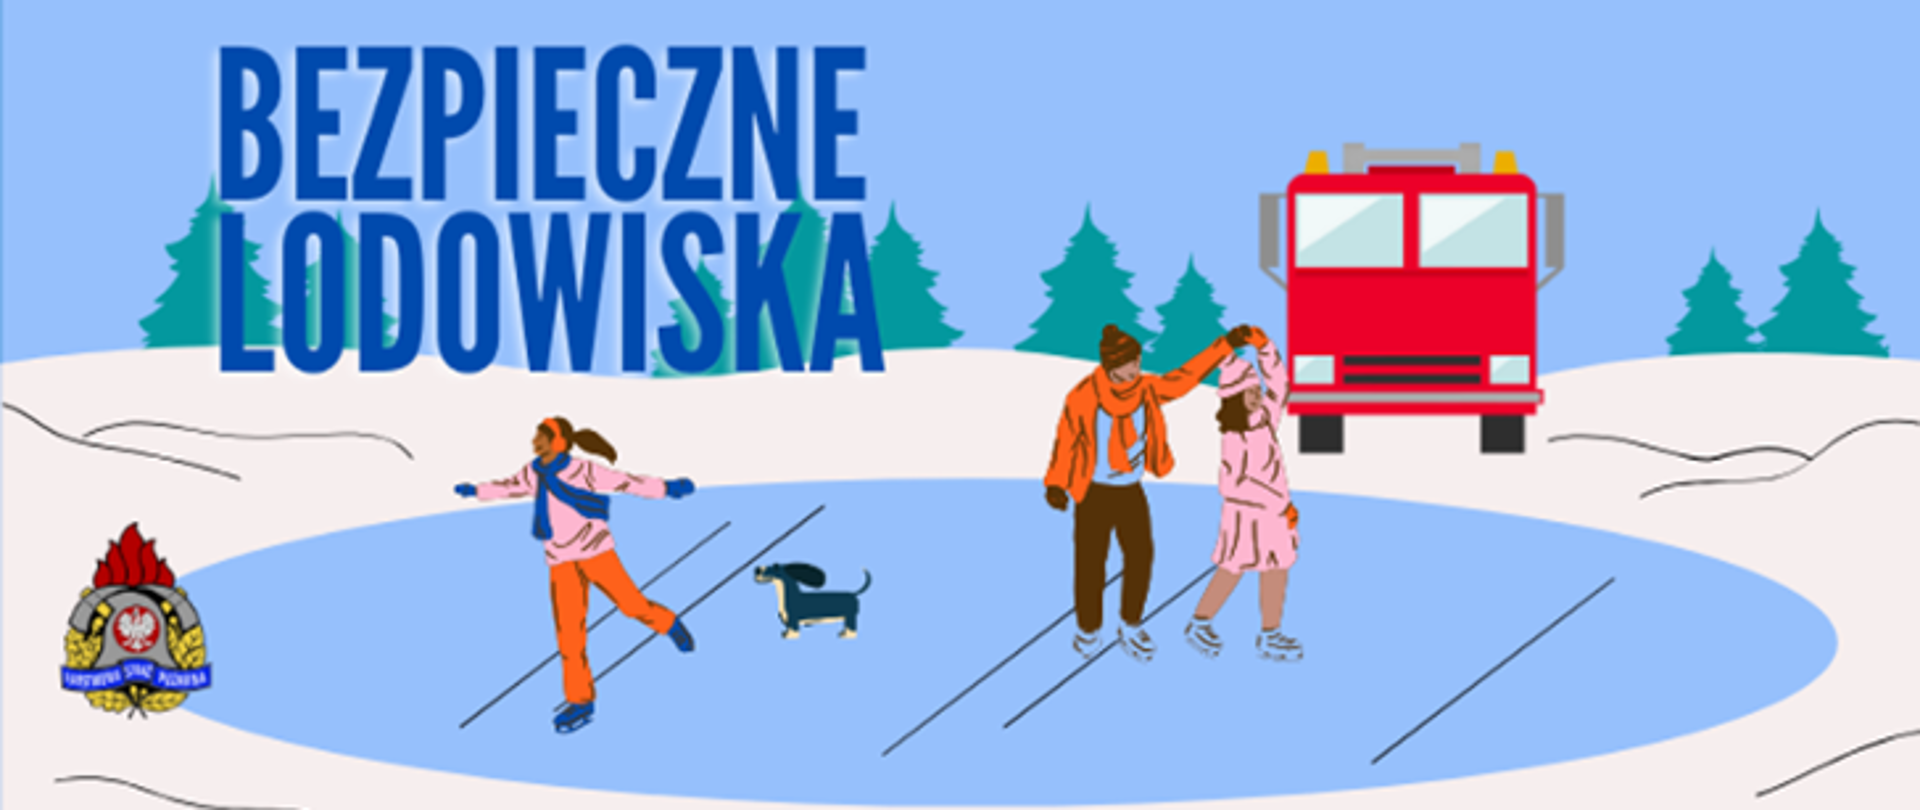 Plakat prezentujący akcję prewencyjną Bezpieczne lodowiska, którą wspiera Państwowa Straż Pożarna.